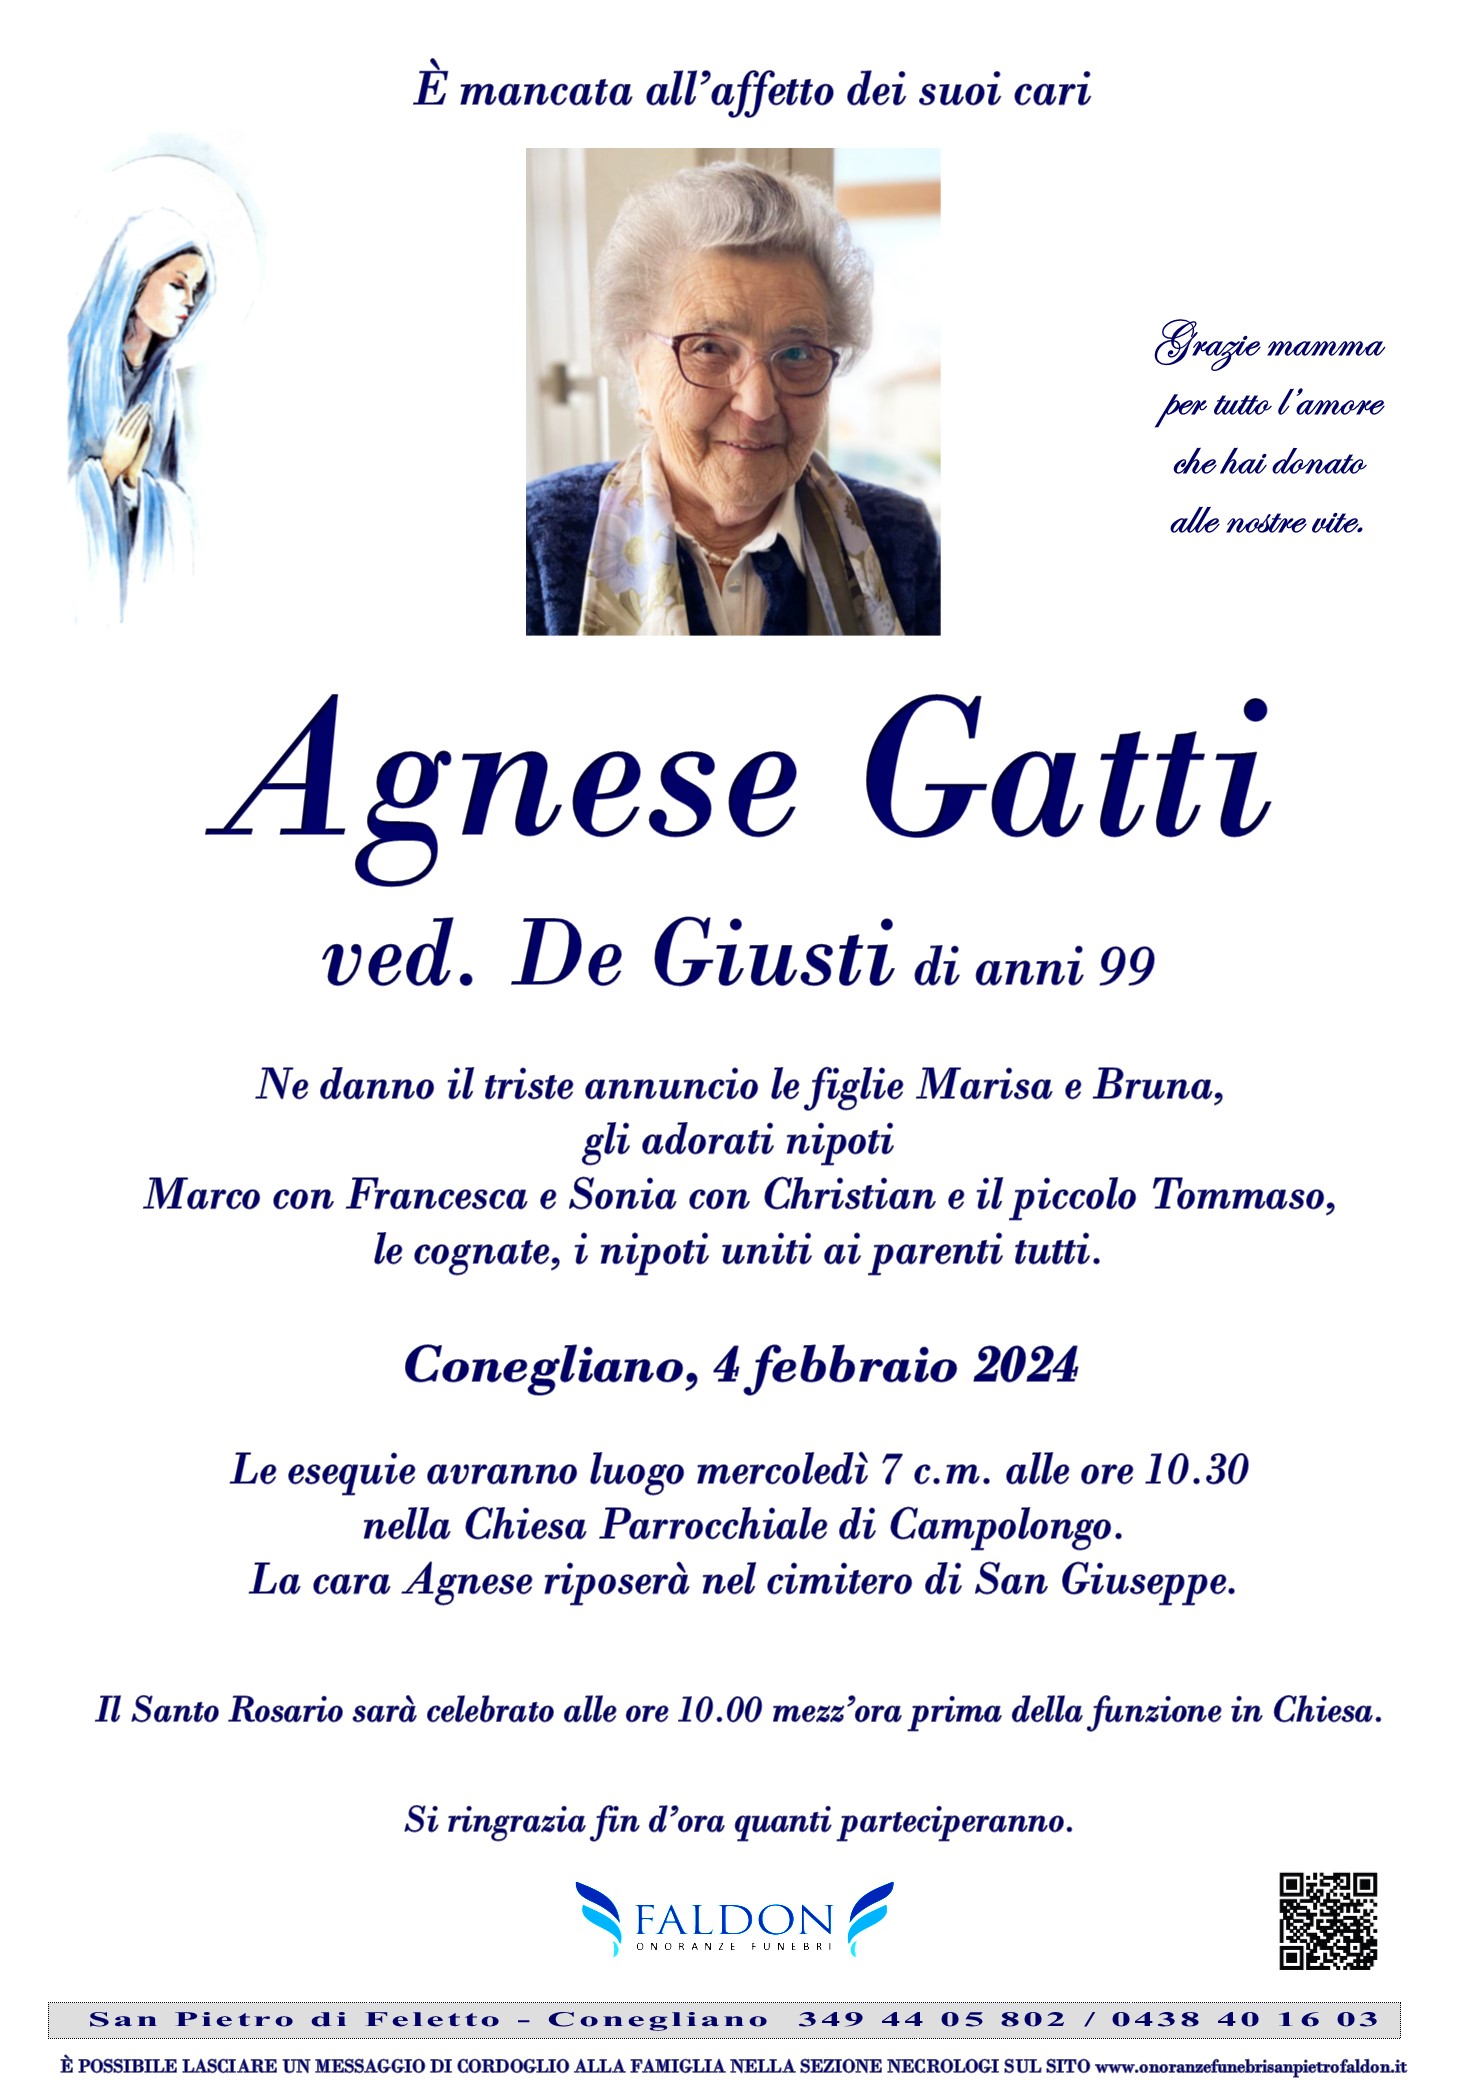 Agnese Gatti